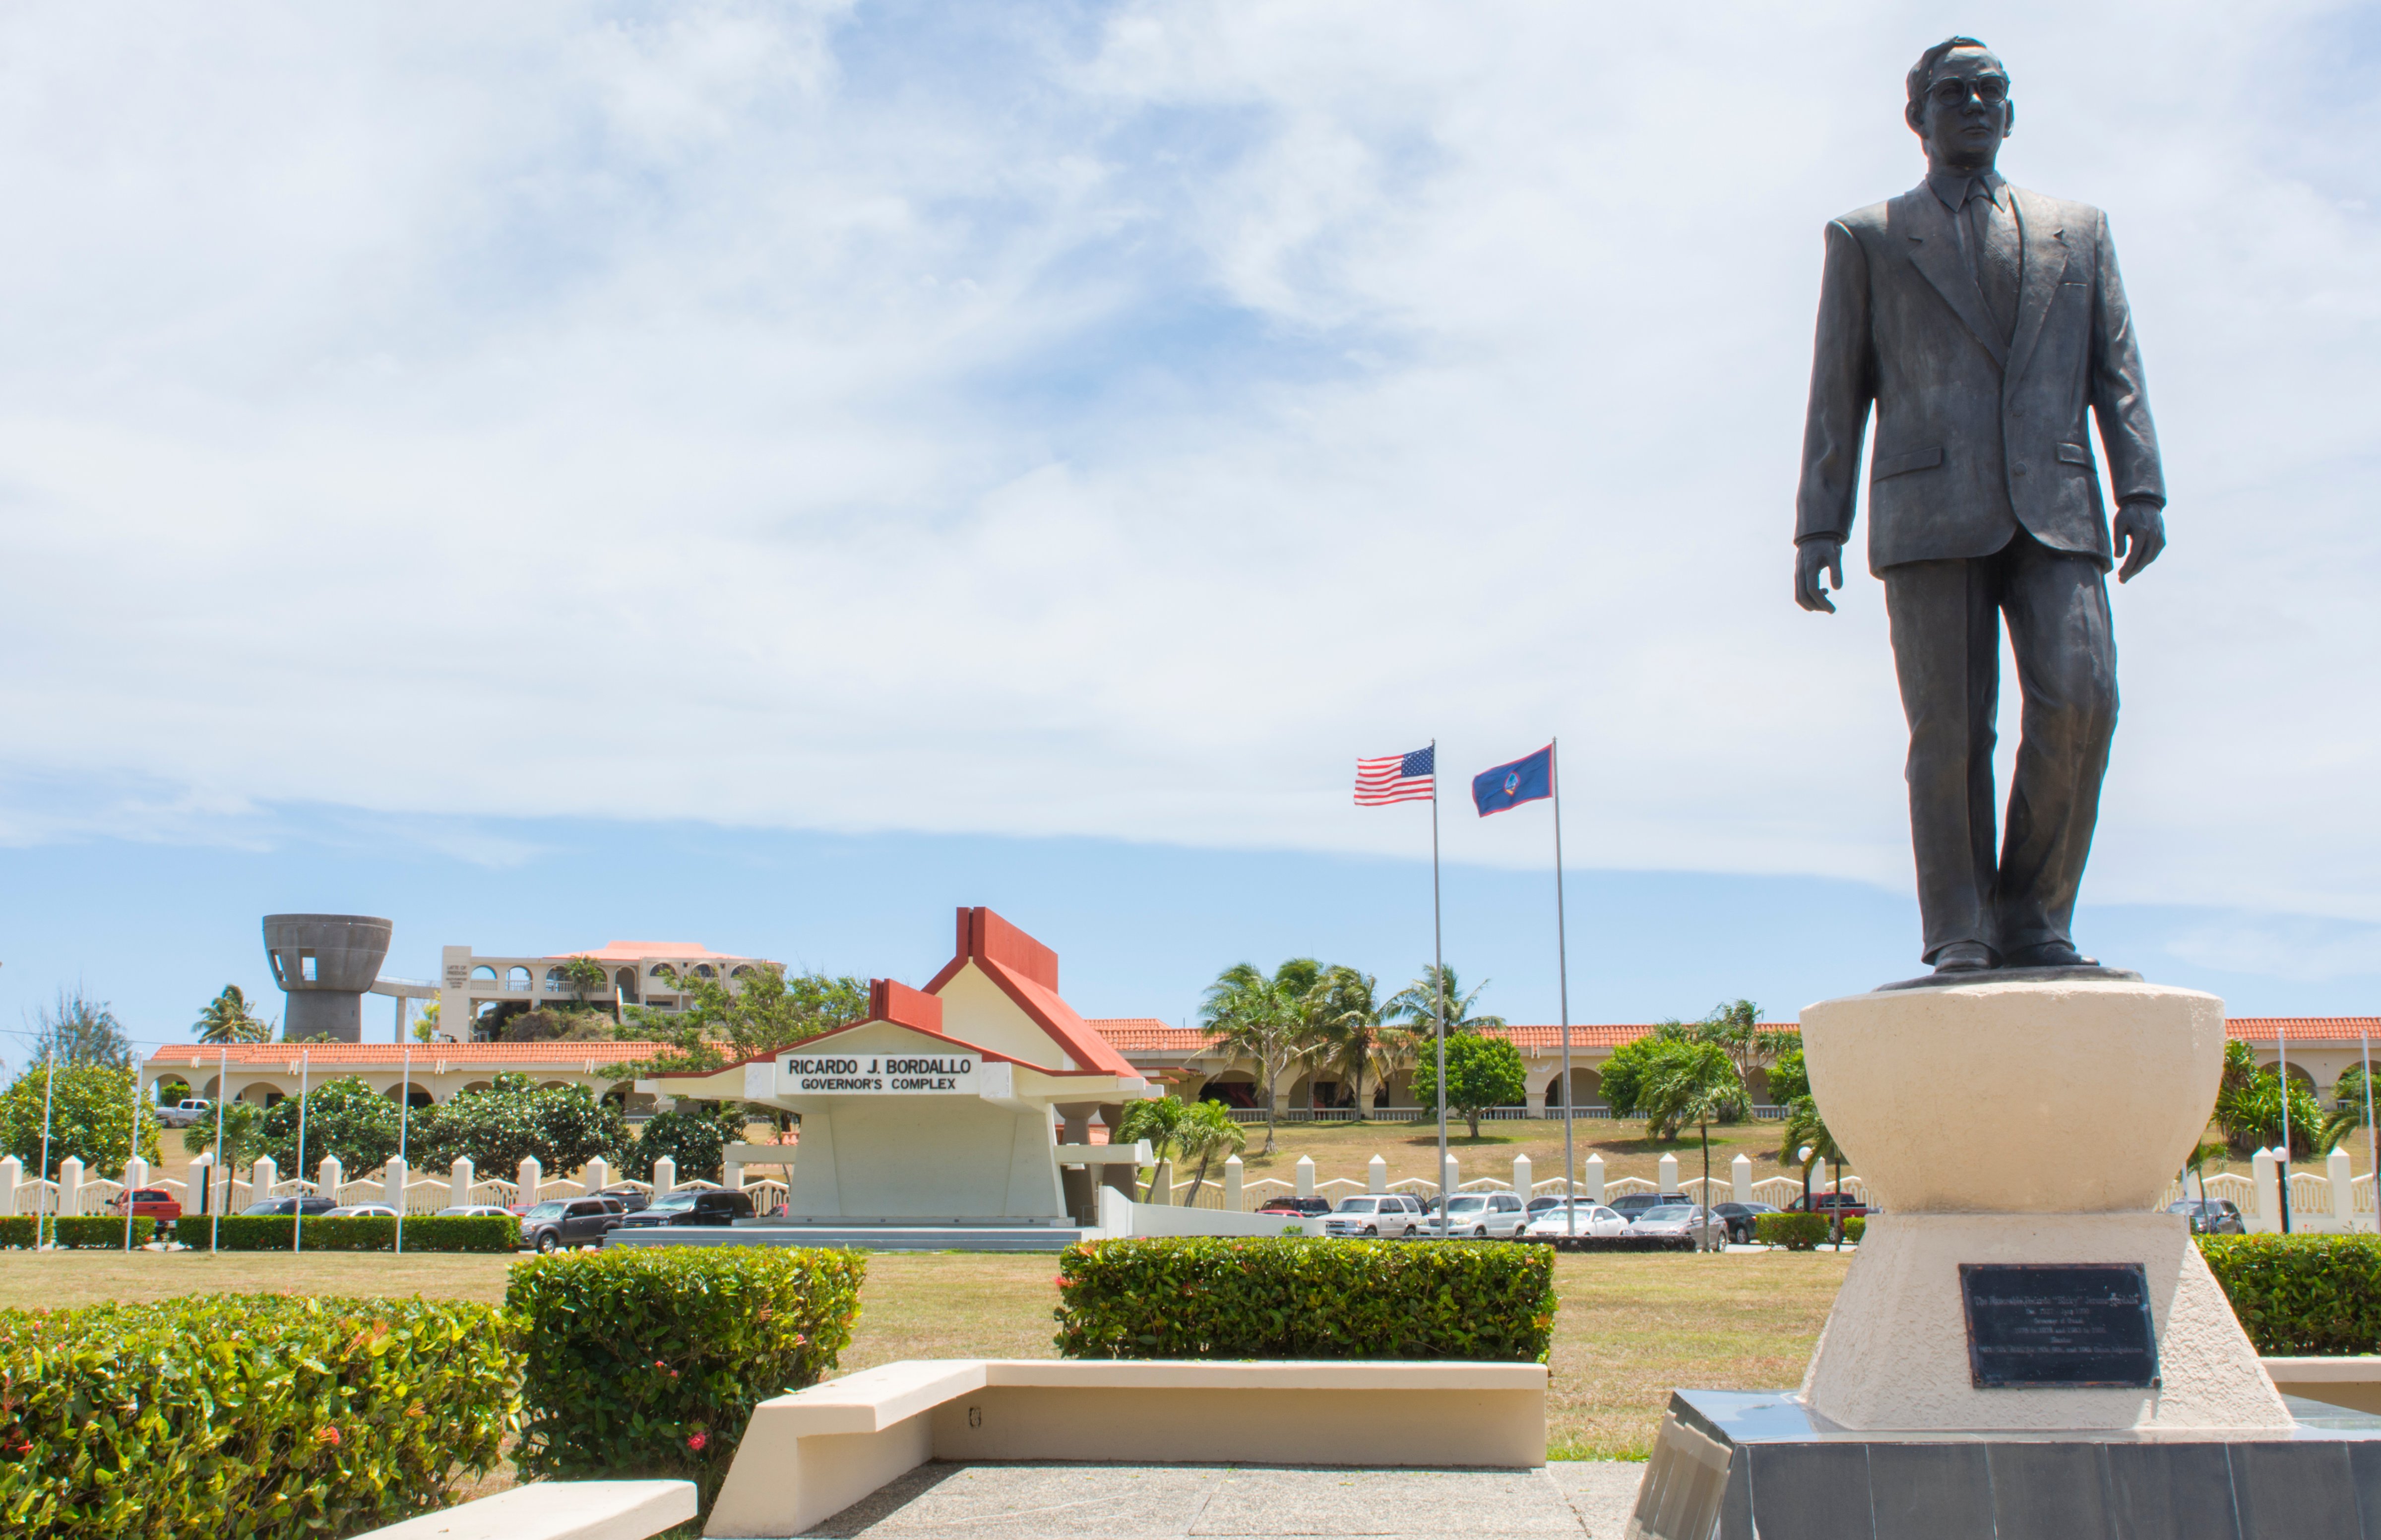 Guam USA Territory Governor's Complex in Hagatna of Ricardo J. Bordallo government